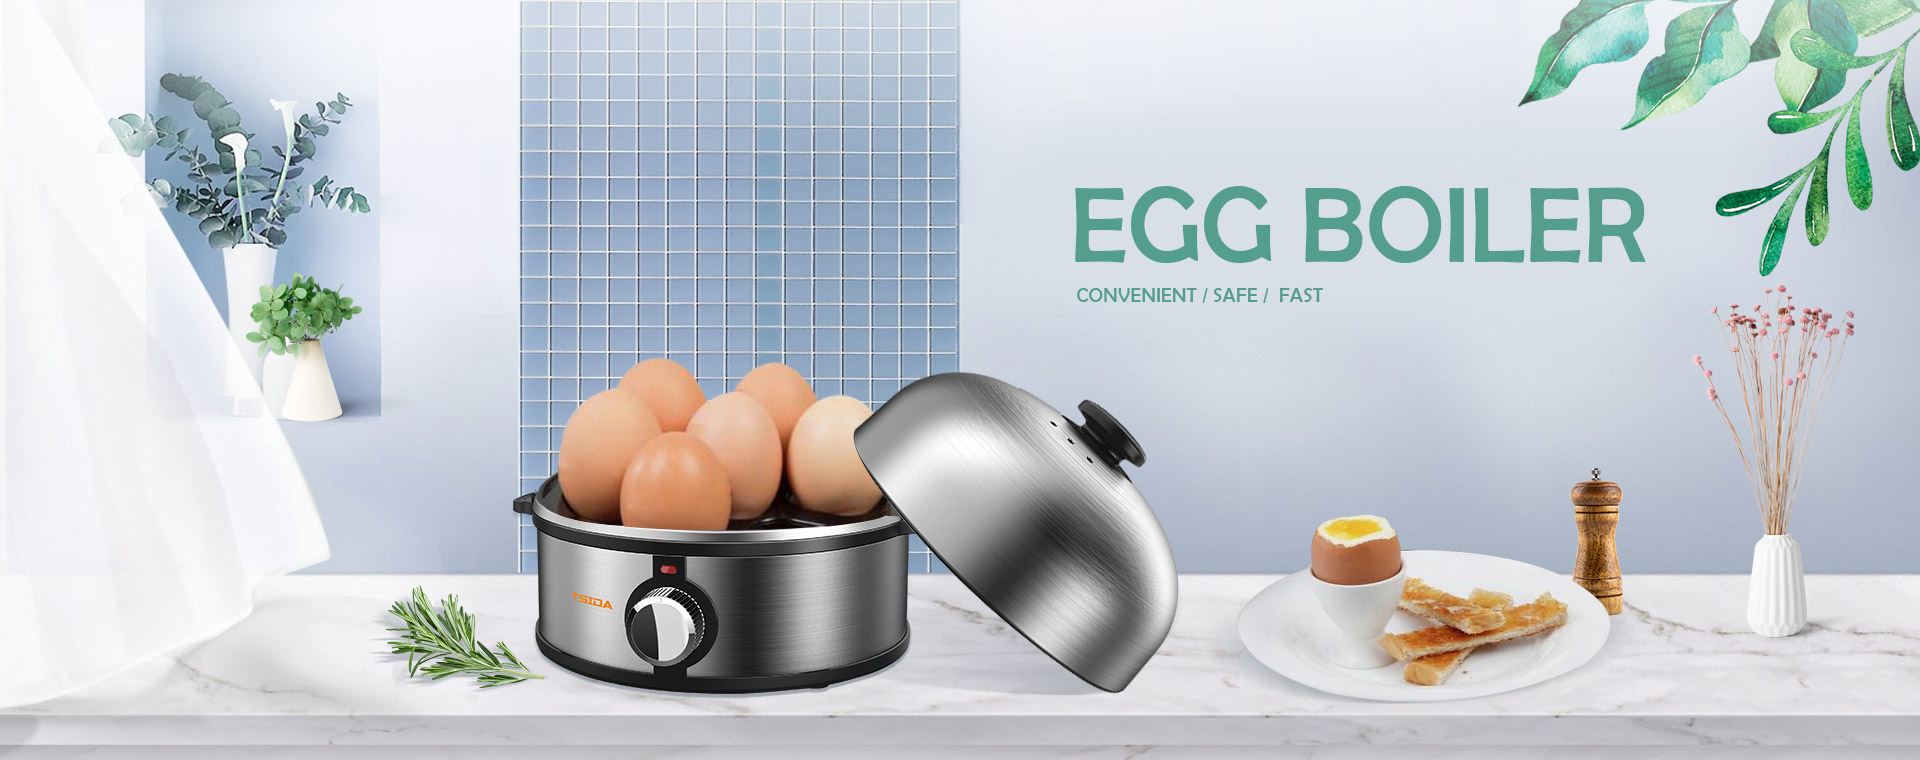 smart egg boiler, automatic electric egg cooker - TSIDA